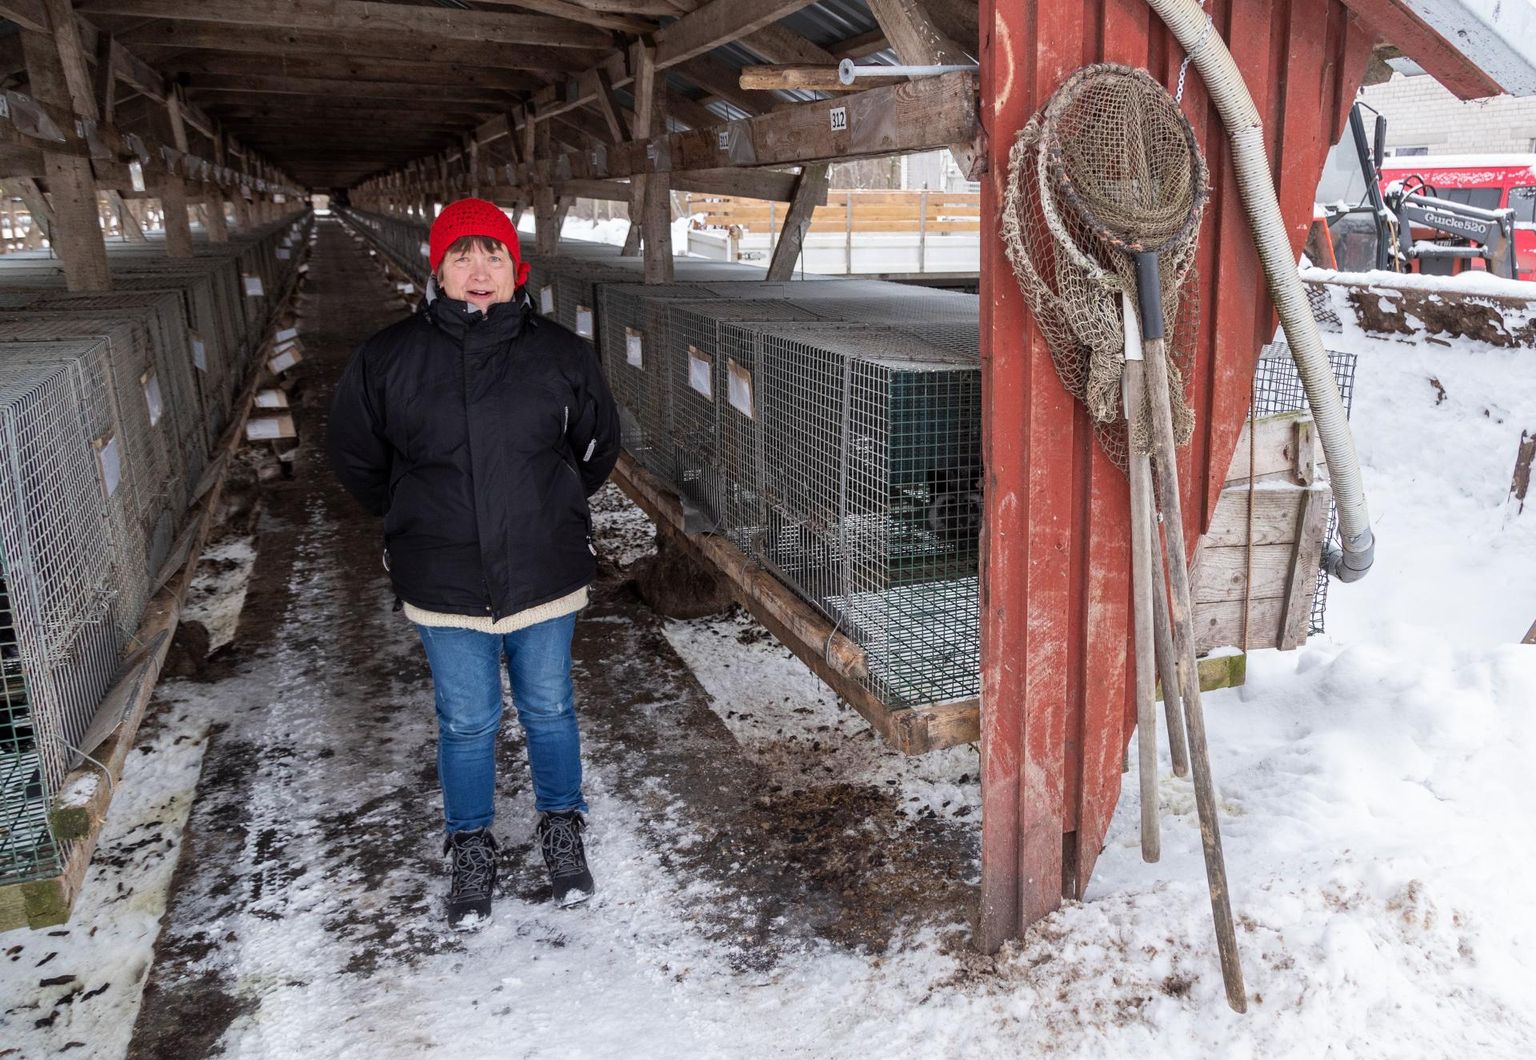 ASi Balti Karusnahk hõberebaste ja naaritsate farm Karjakülas. Pildil ettevõtte juht Marge Altosaar, kes on viimase poole aasta jooksul firmat kõvasti koomale tõmmanud.